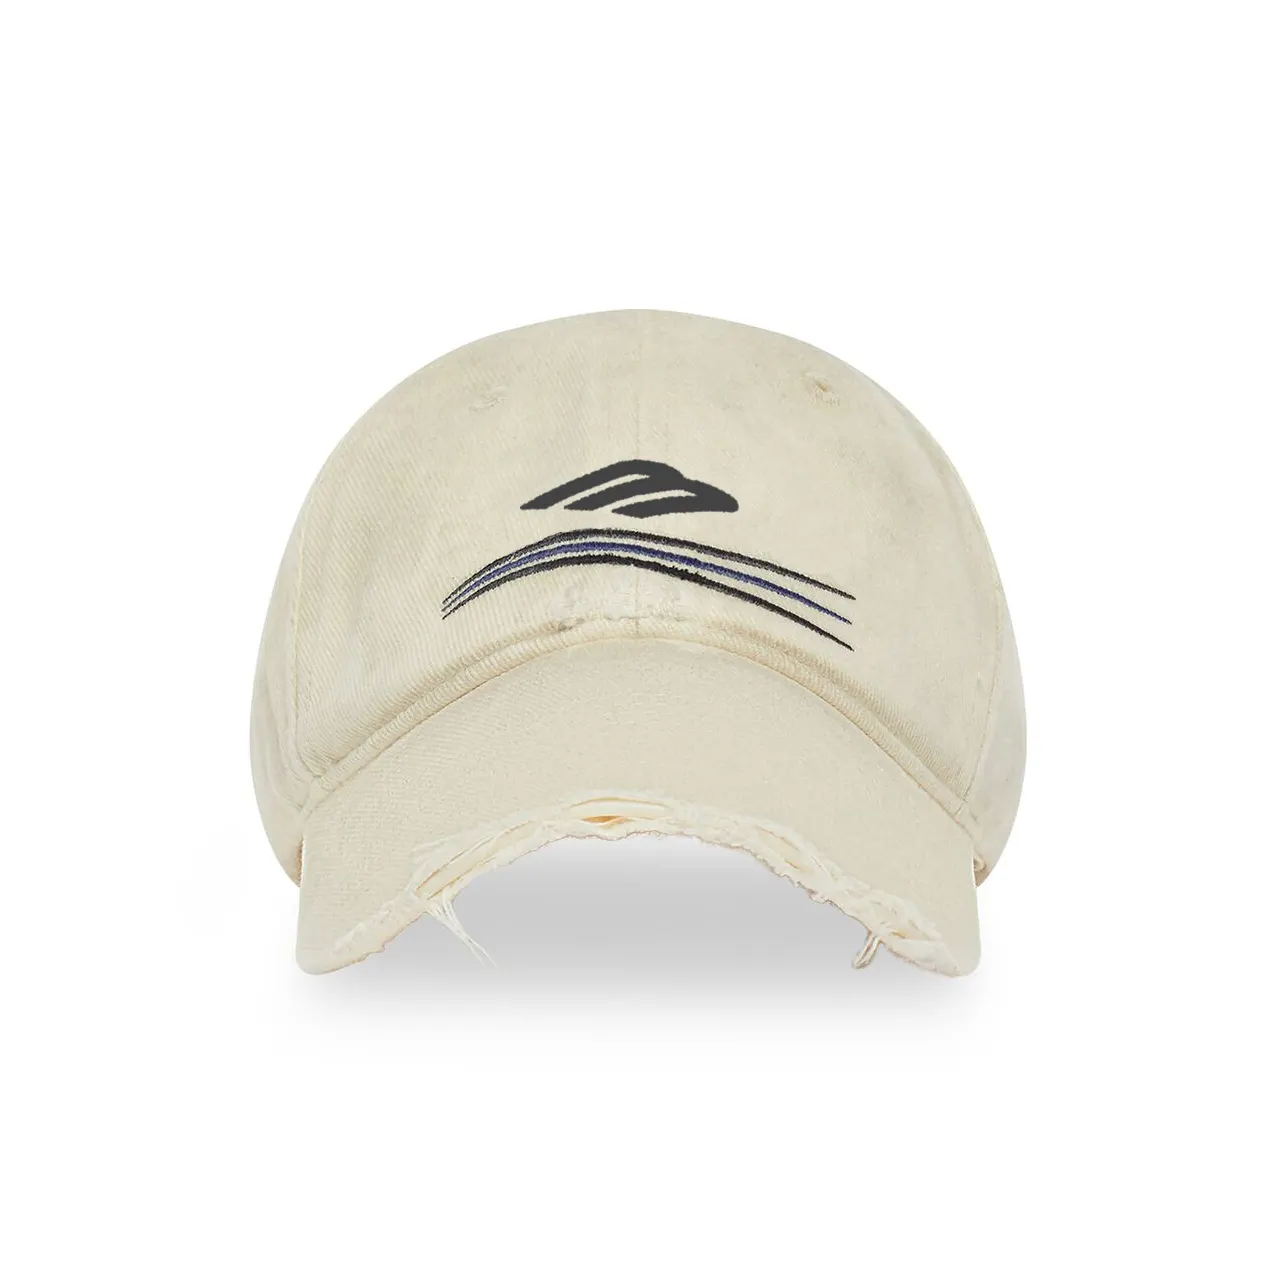 Özel logo kadin politik kampanya yok kap yıpranmış beyzbol şapkası cırt cırt baba şapka pamuk matkap beyzbol şapkası